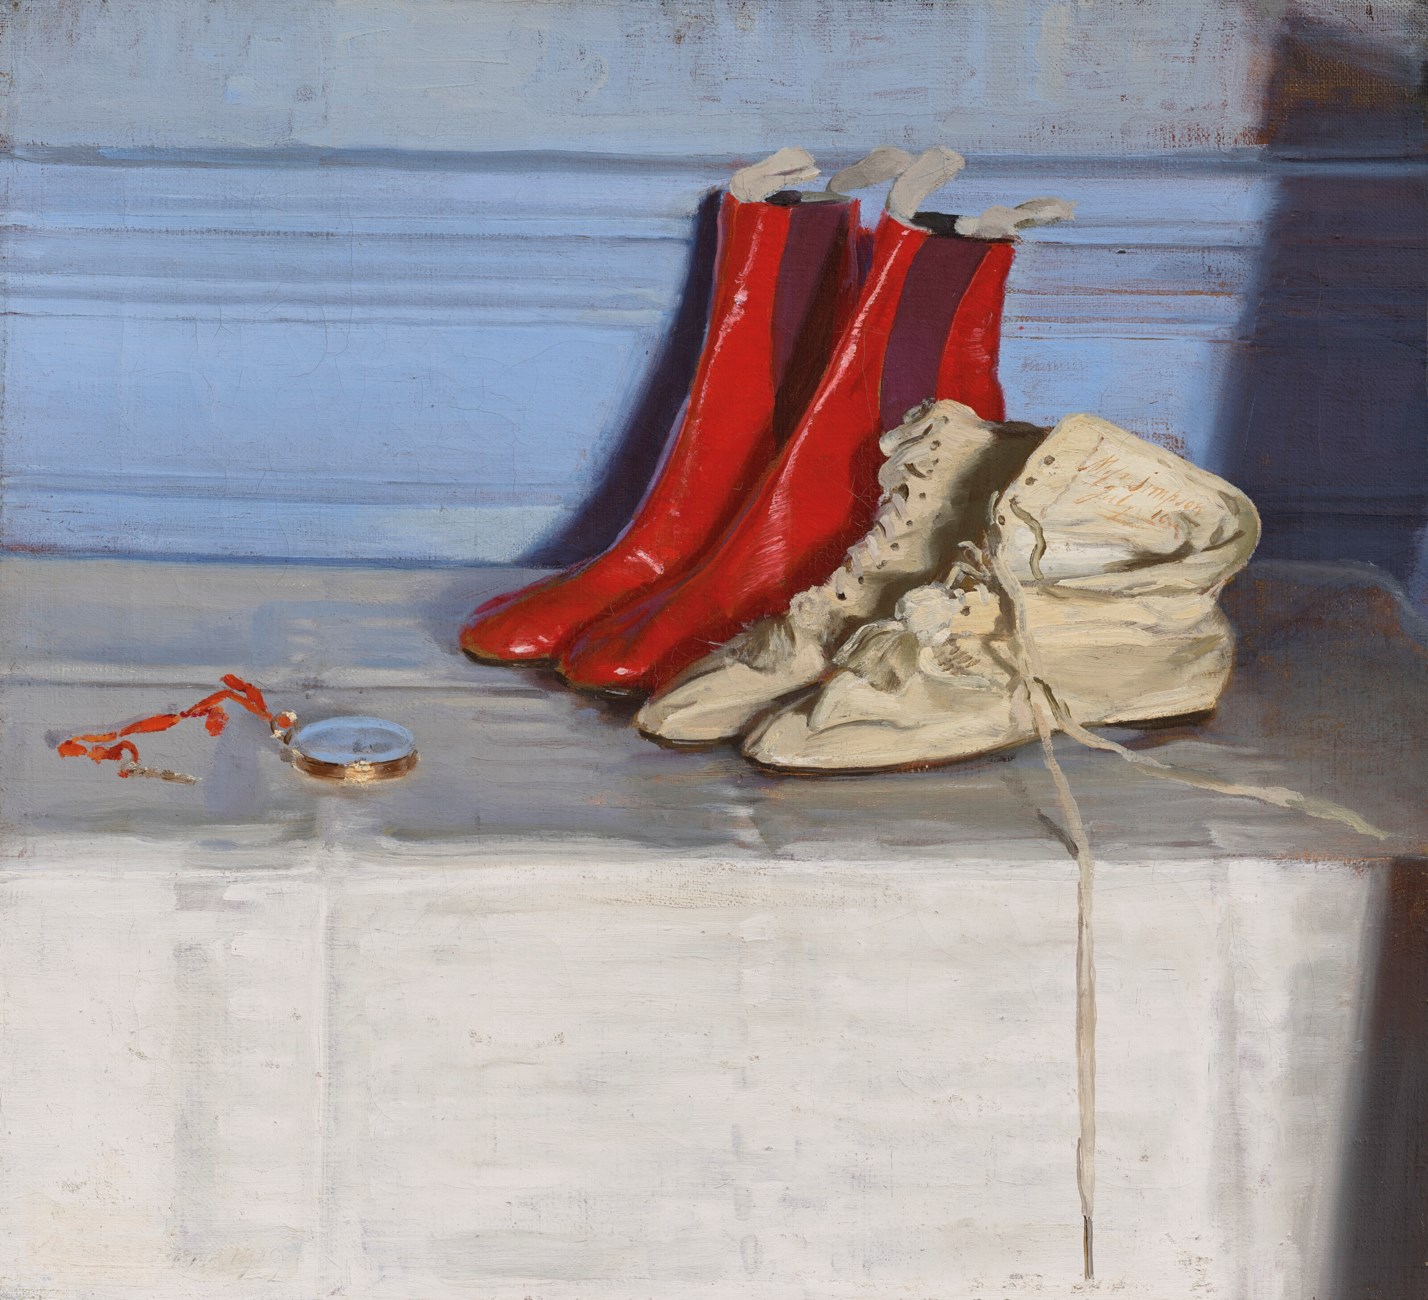 辛普森小姐的靴子 by William Nicholson - 1919 - 55 x 59.7 cm 